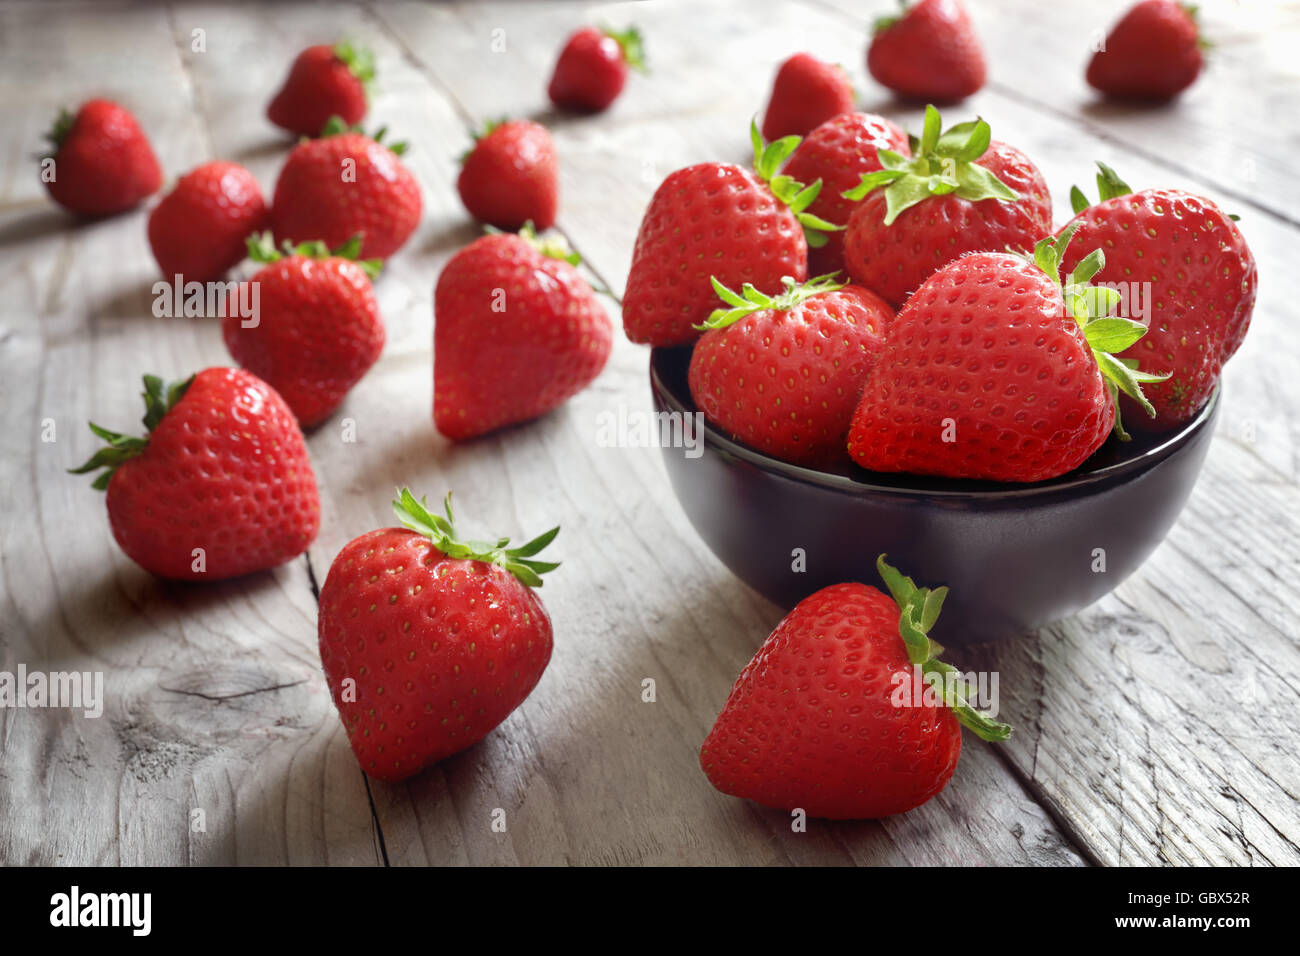 Erdbeeren frisch gepflückt in einer Schüssel auf Holztisch Antioxidans organic Superfood Konzept für gesunde Ernährung und Ernährung Stockfoto